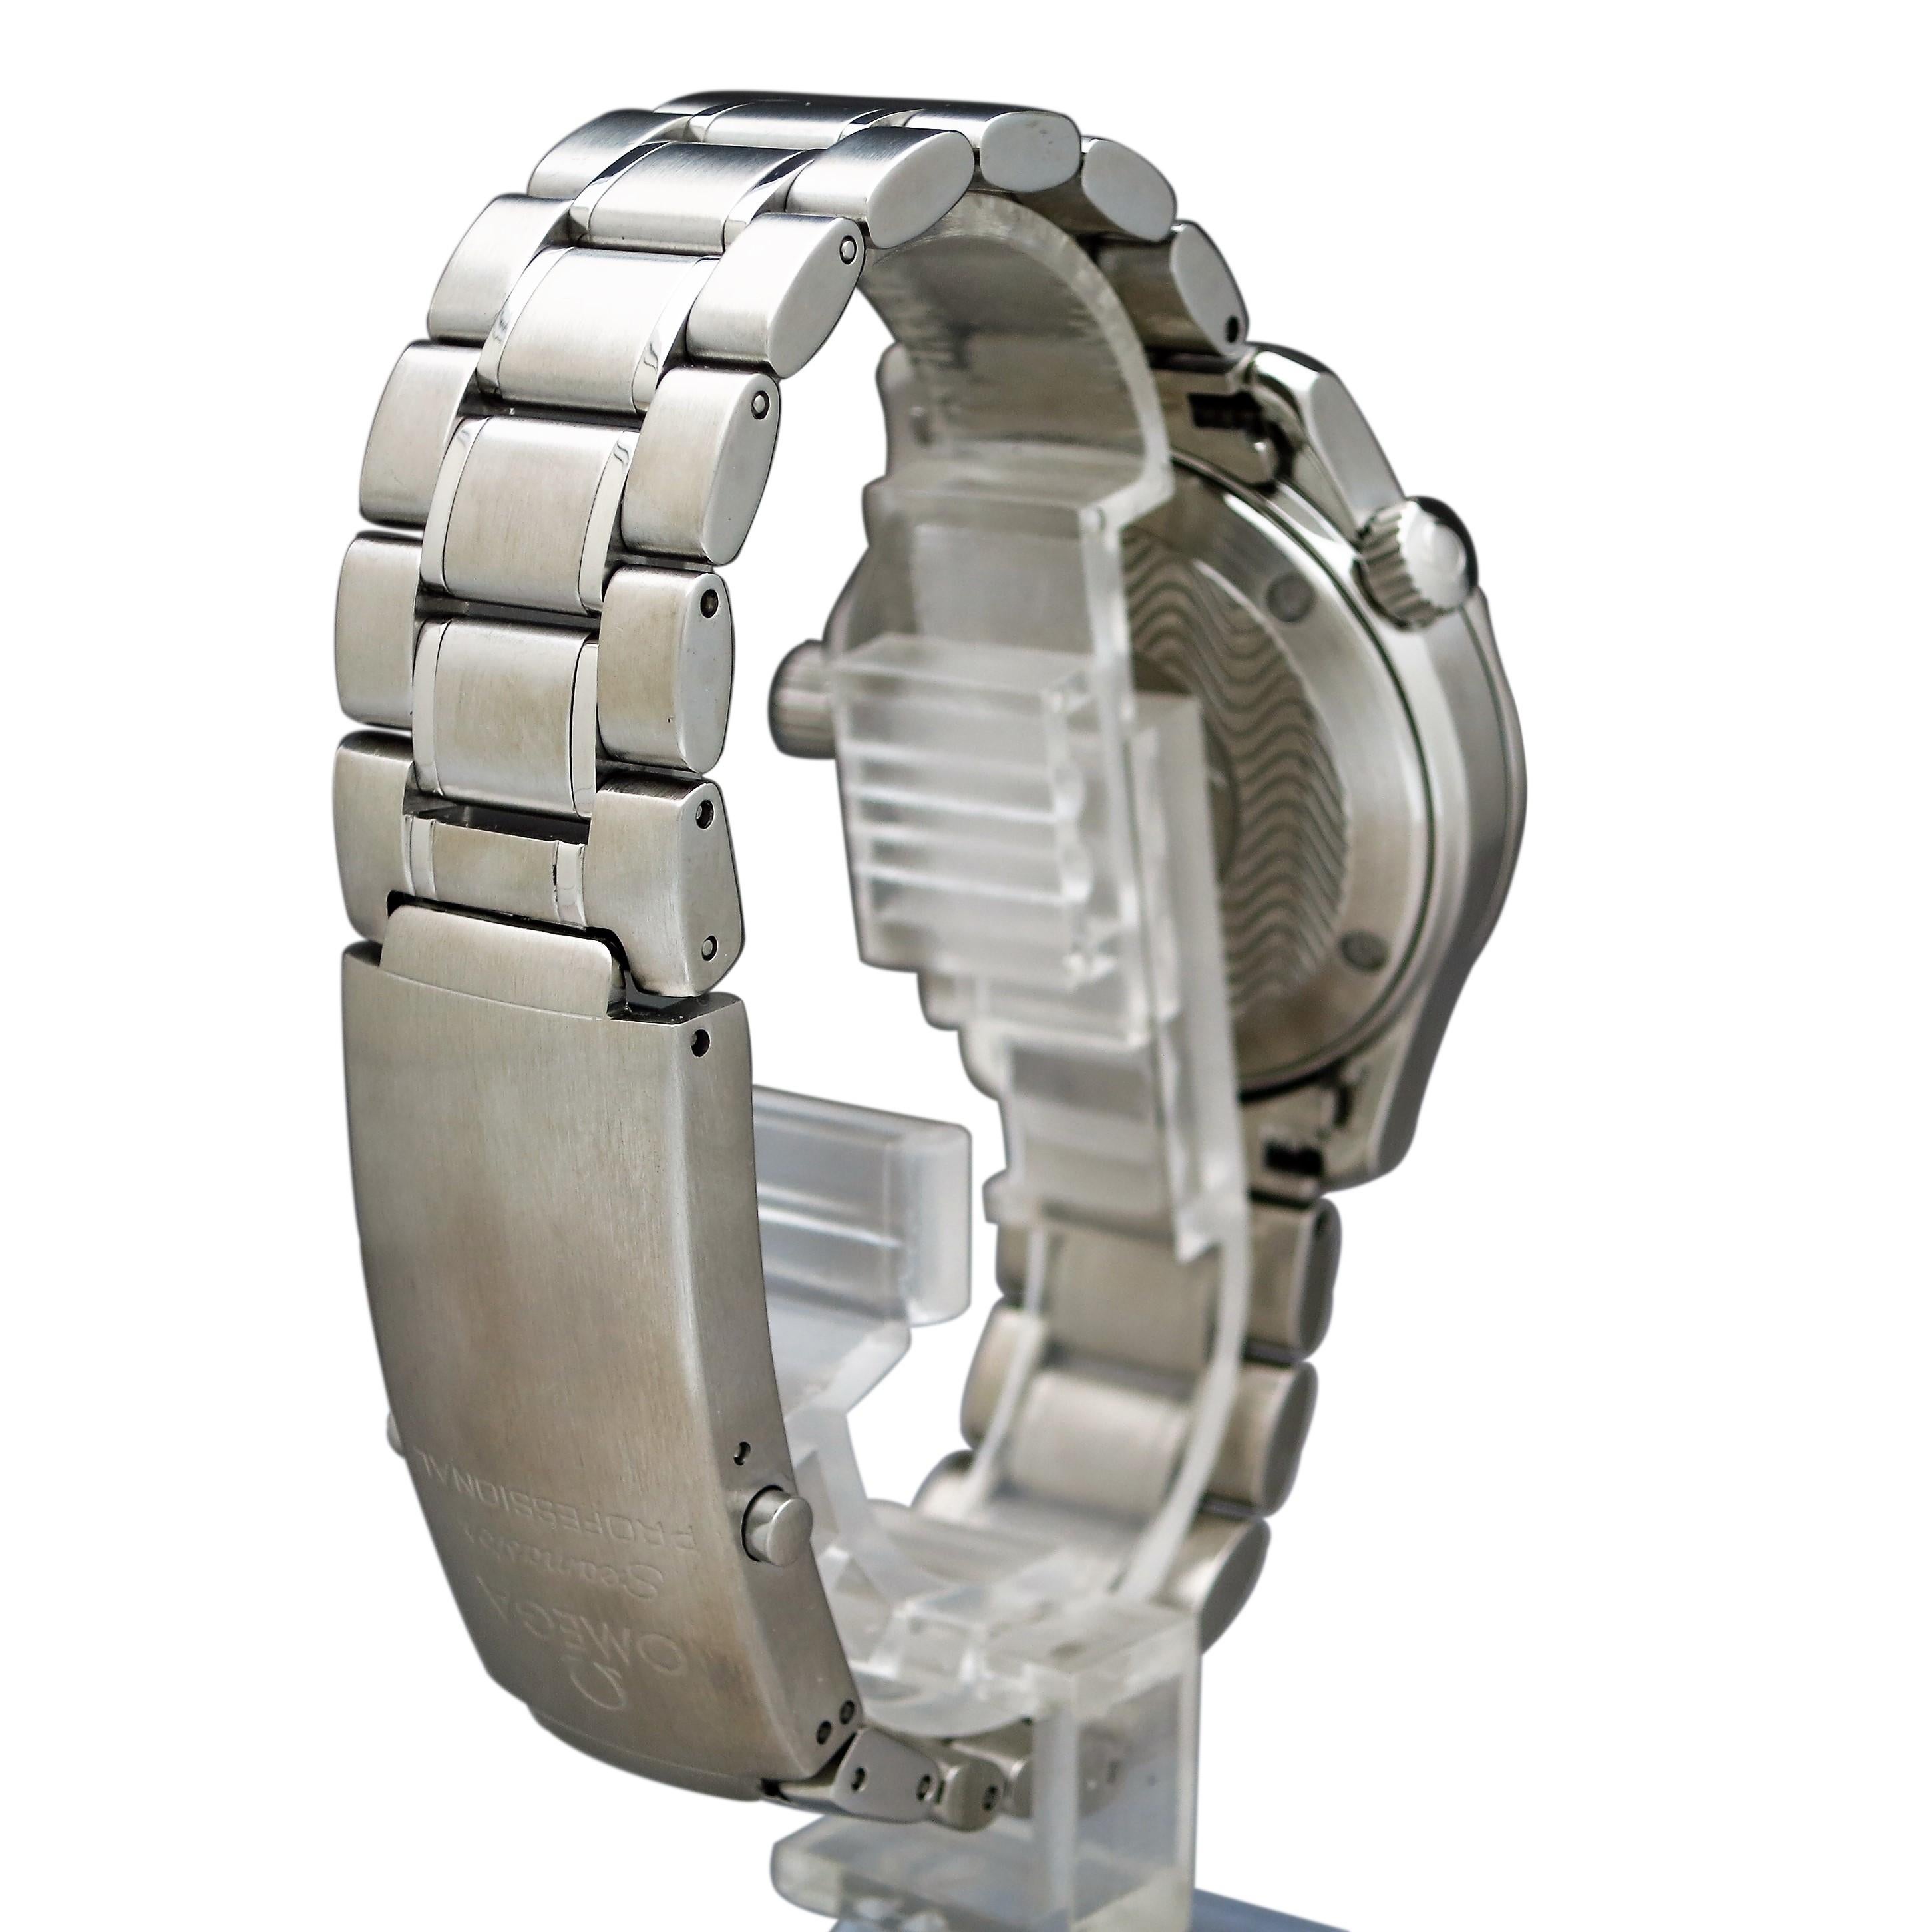 8.5 inch wrist watch size